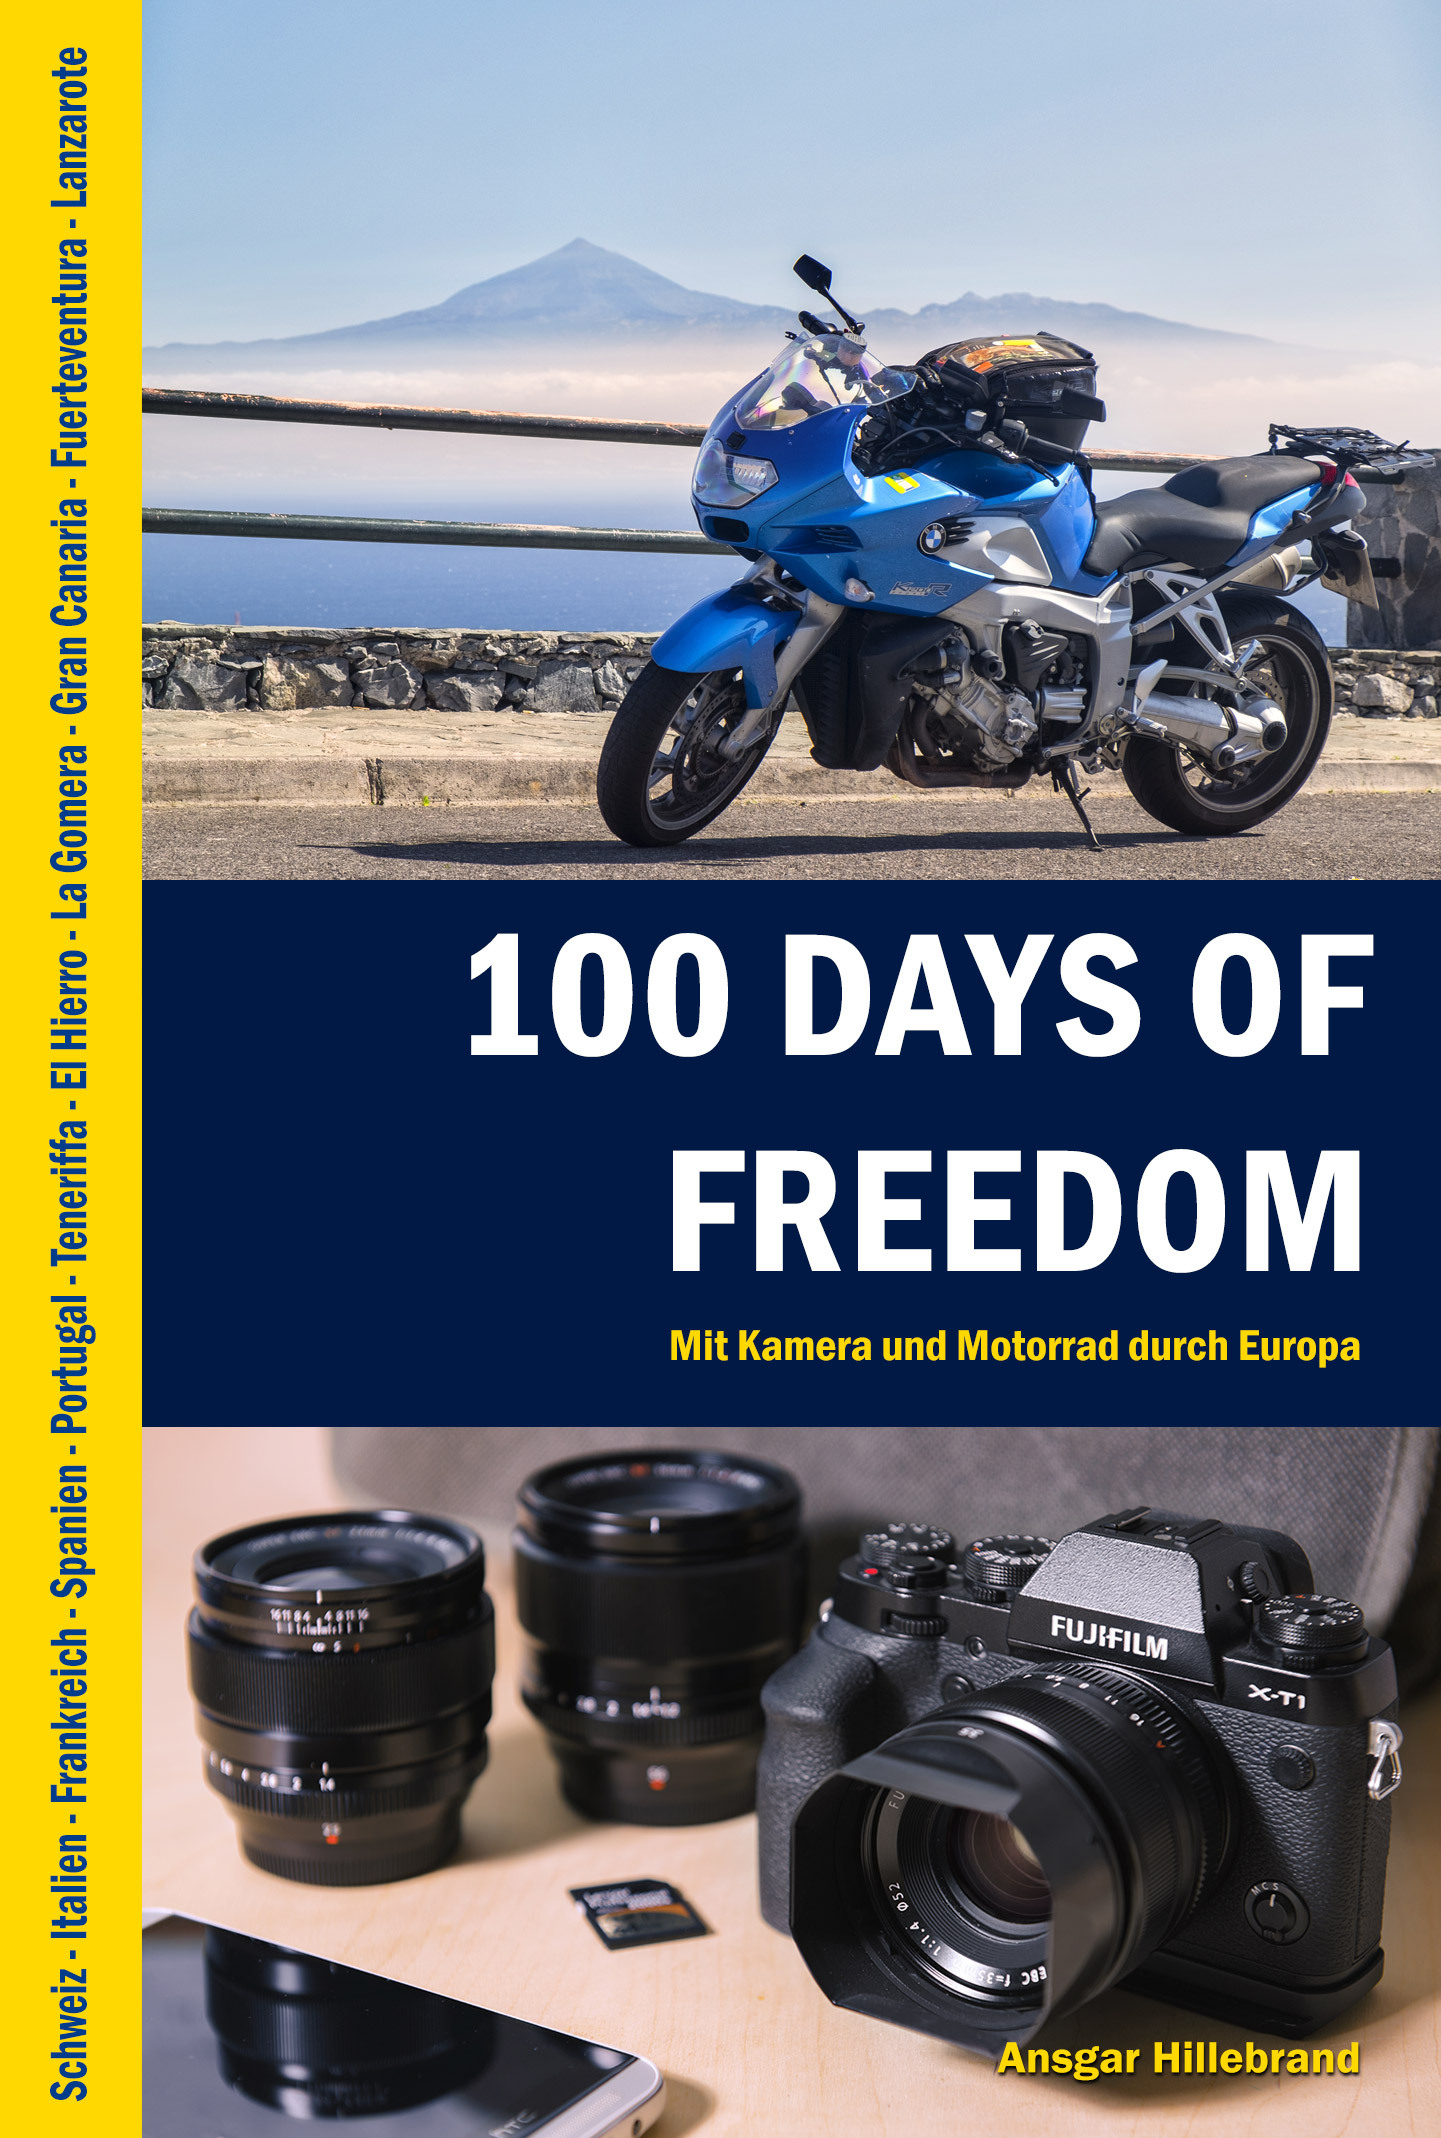 "100 Days Of Freedom", Cover, E-Book, eBook, ePub, MOBI, PDF, amazon, Kindle, Tolino